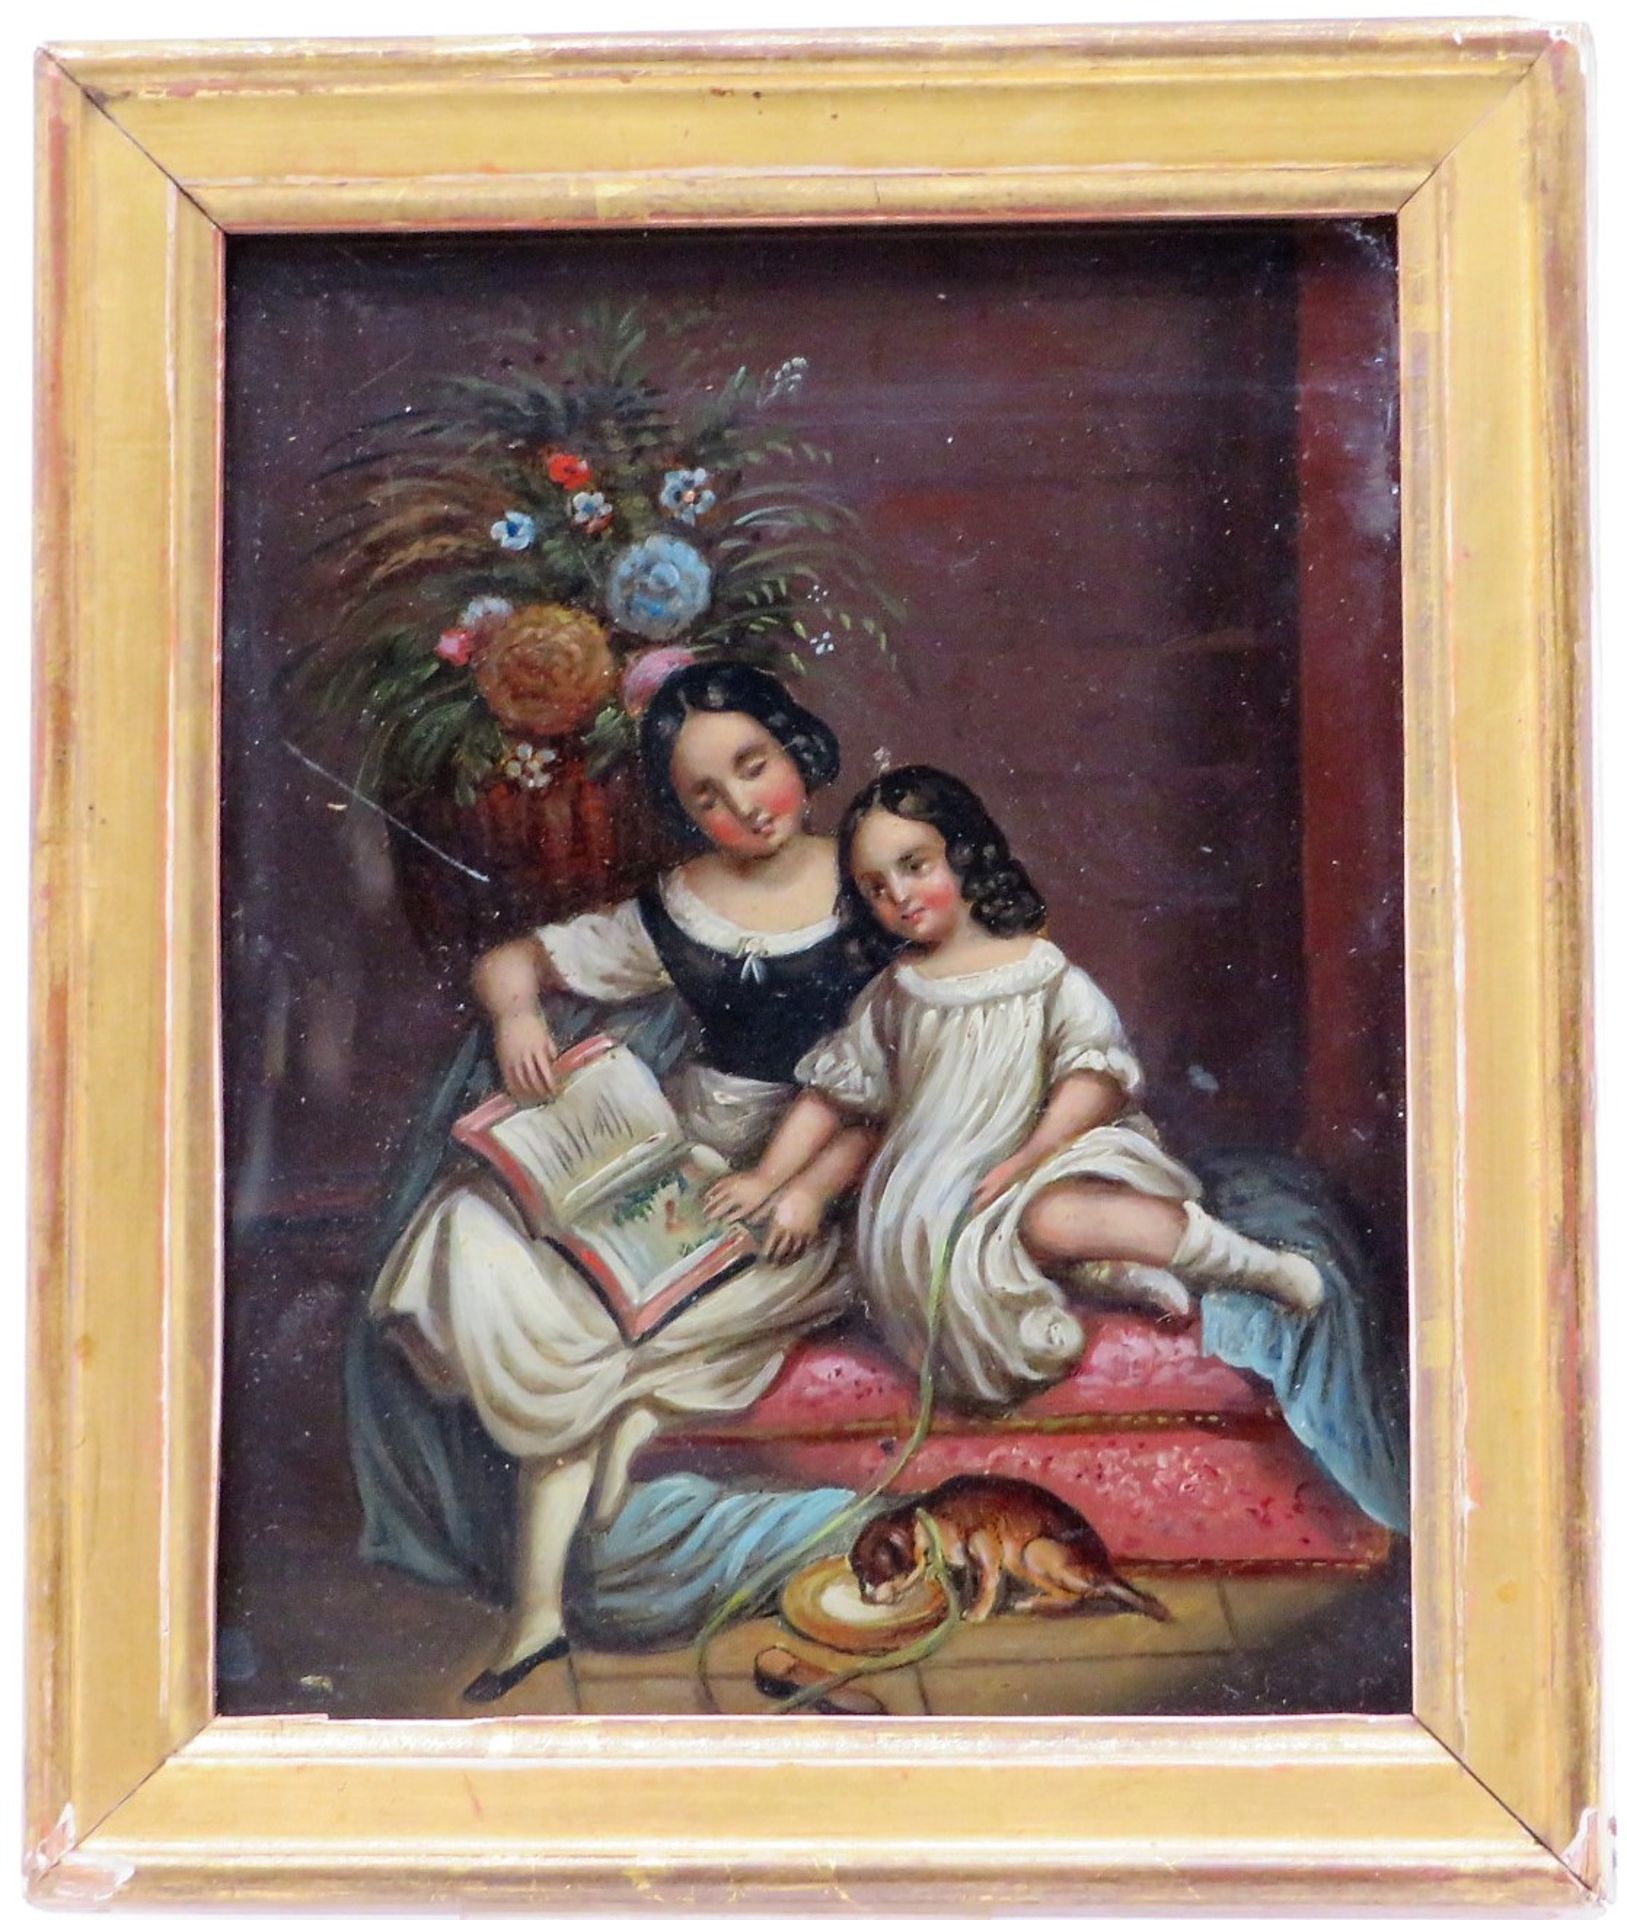 Unbekannt, Biedermeier, 1. Hälfte 19. Jahrhundert, "Zwei Mädchen beim Lesen", Öl/Blech, 13 x 10,5 c - Bild 2 aus 2